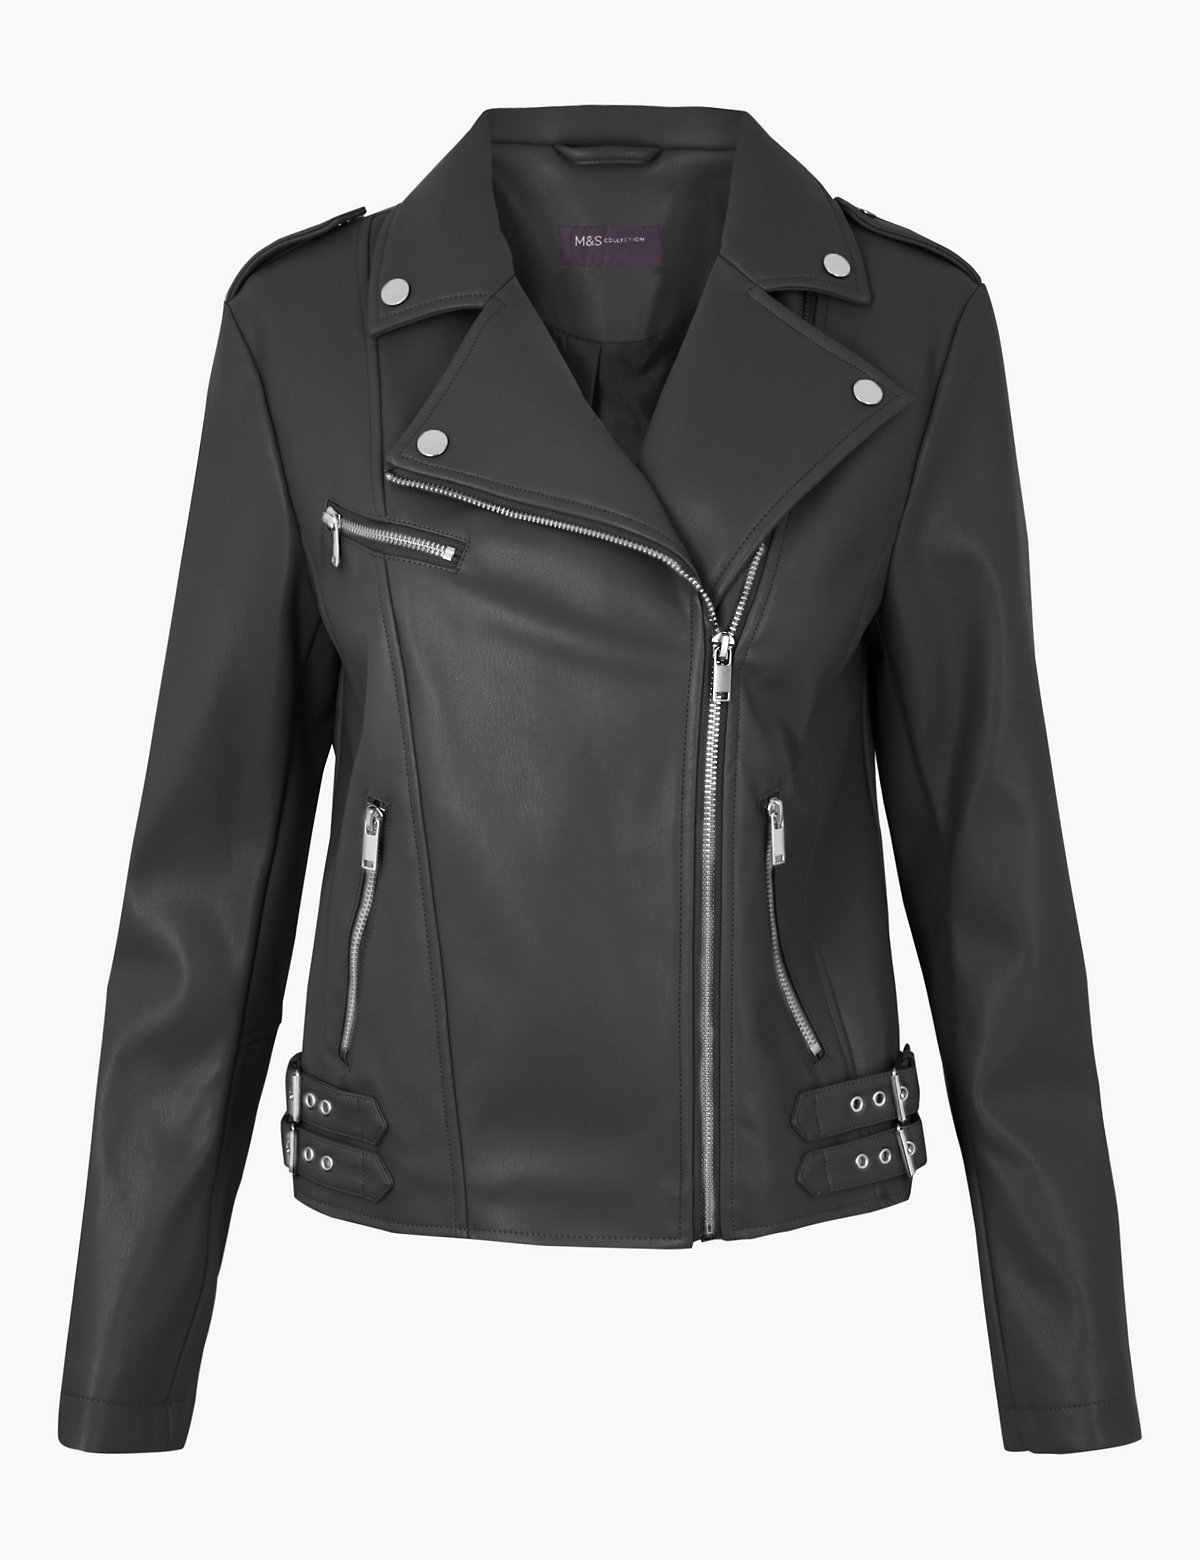 discount 46% Black S Loavies biker jacket WOMEN FASHION Jackets Biker jacket Leatherette 